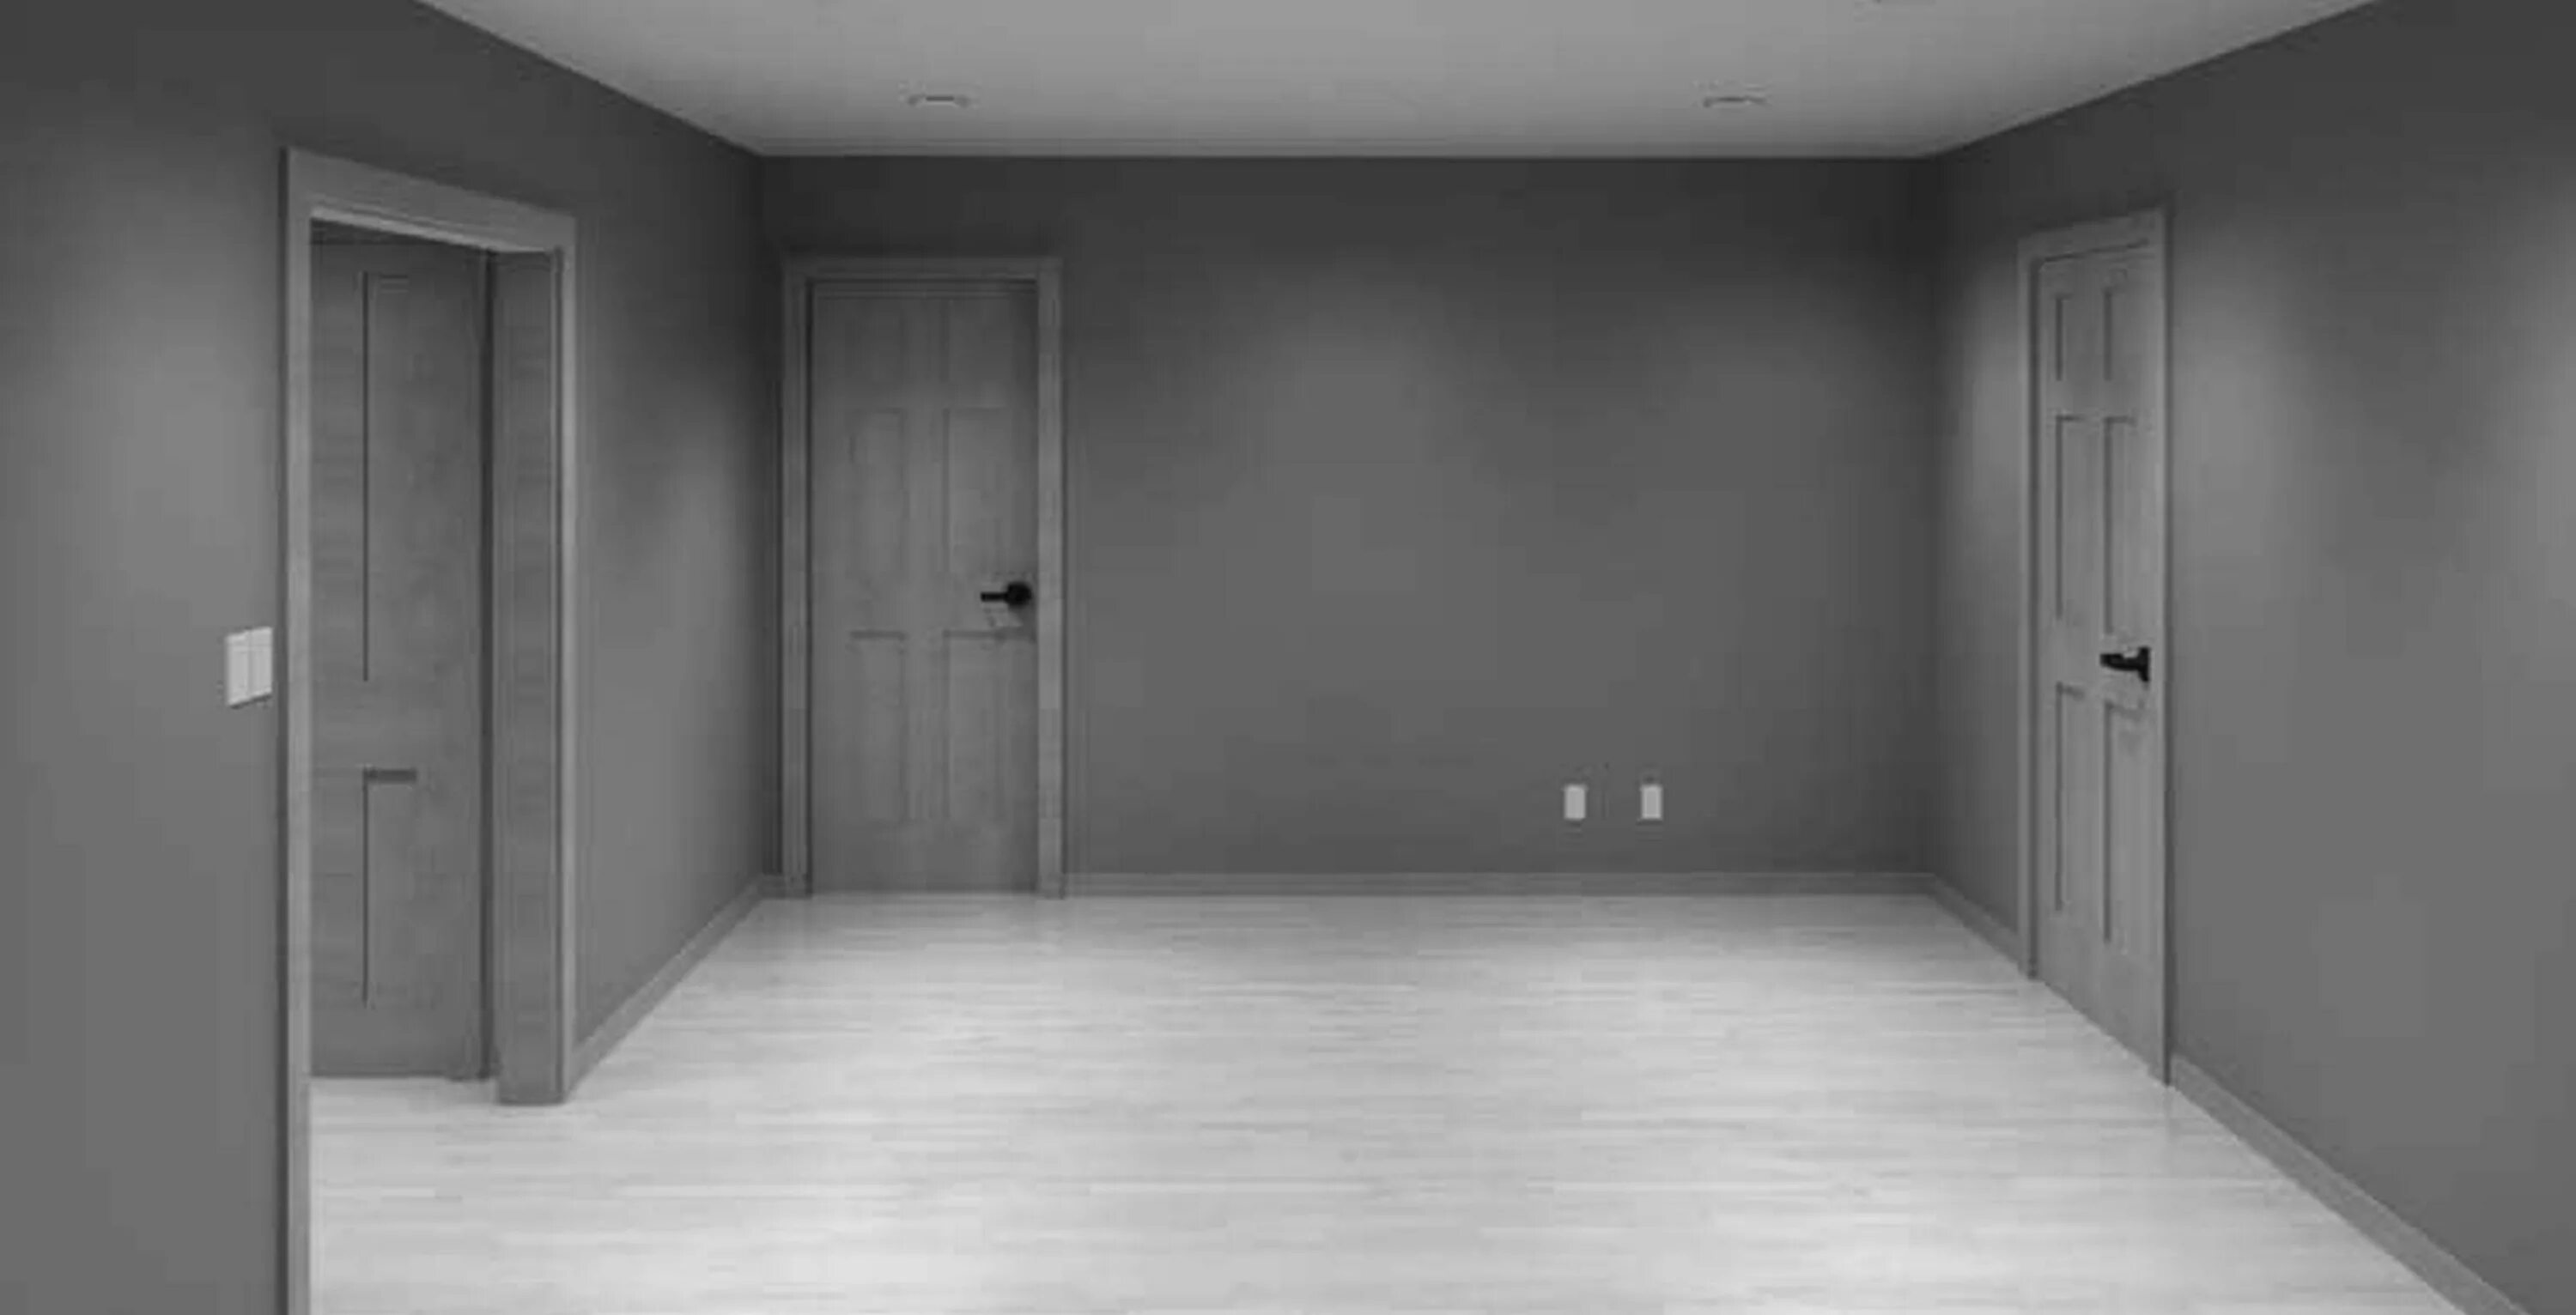 Песня серые дома полупустые. Пустая комната. Пустая комната с серыми стенами. Пустой интерьер. Интерьер без мебели.